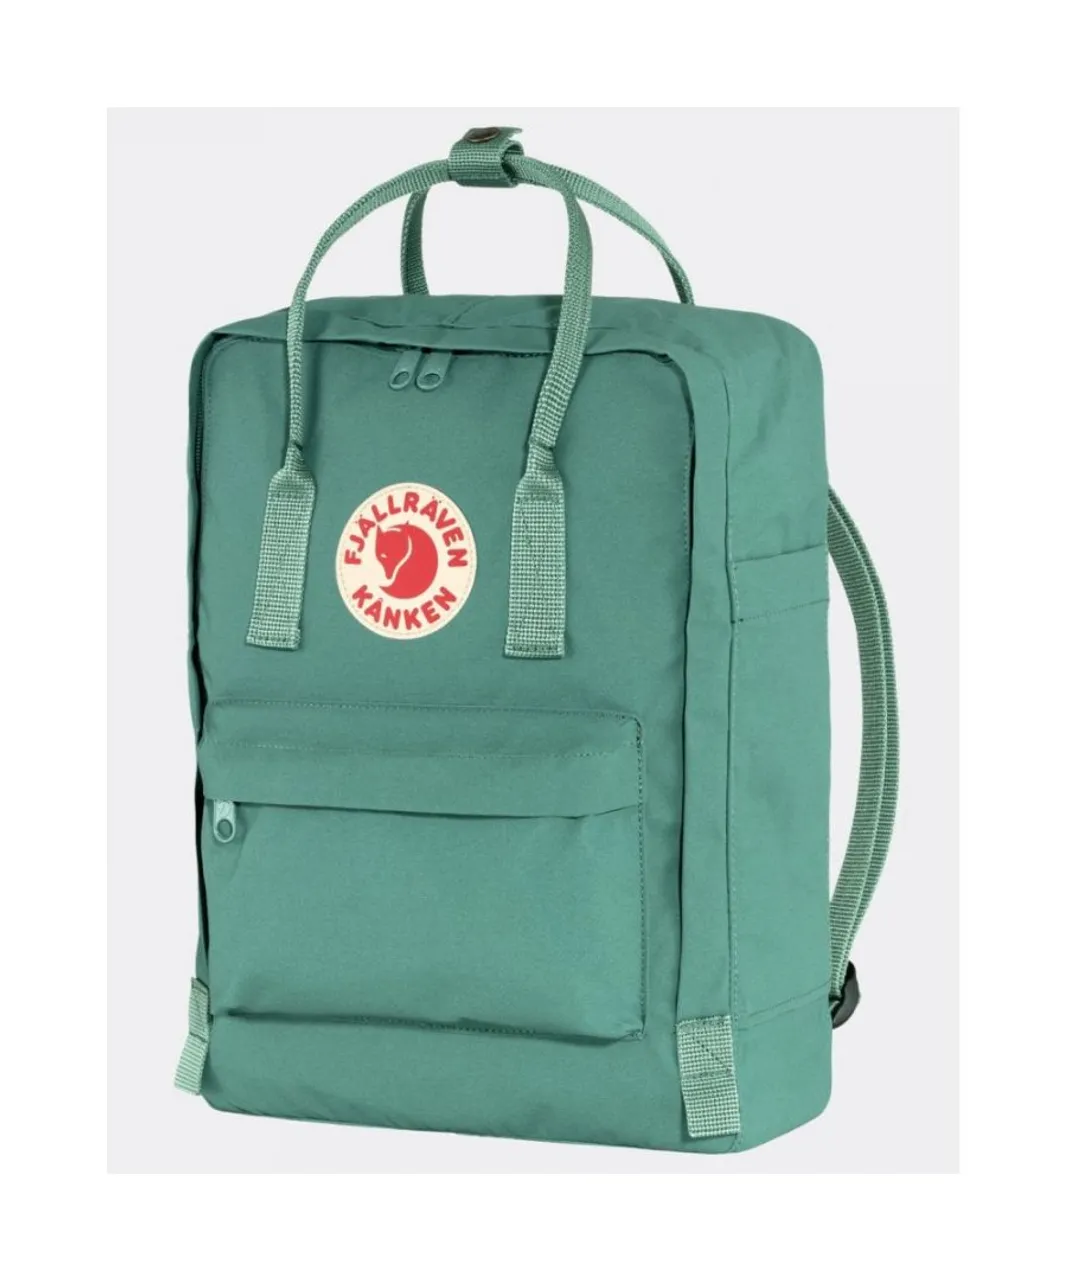 Fjallraven Unisex Kanken Classic Backpack - Dark Green Nylon - One Size